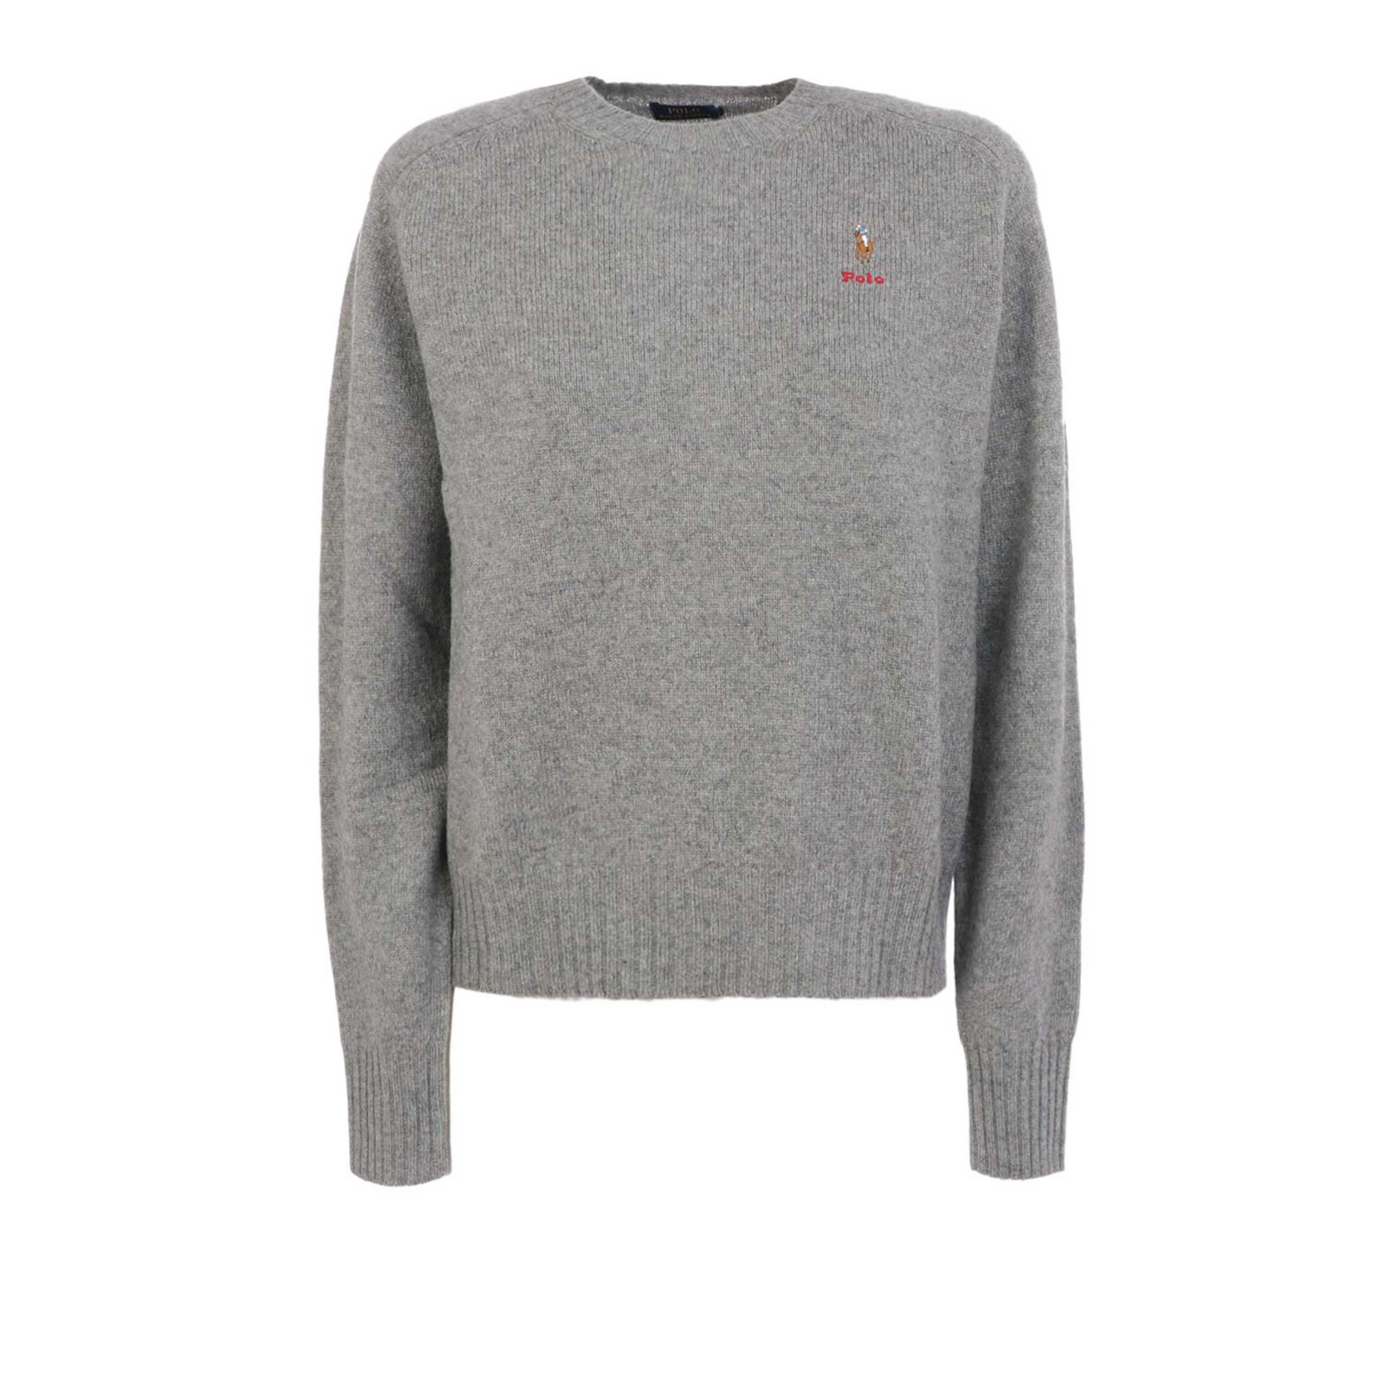 Maglione in lana grigio firmato Polo Ralph Lauren con polsini a coste e logo brand frontale. 